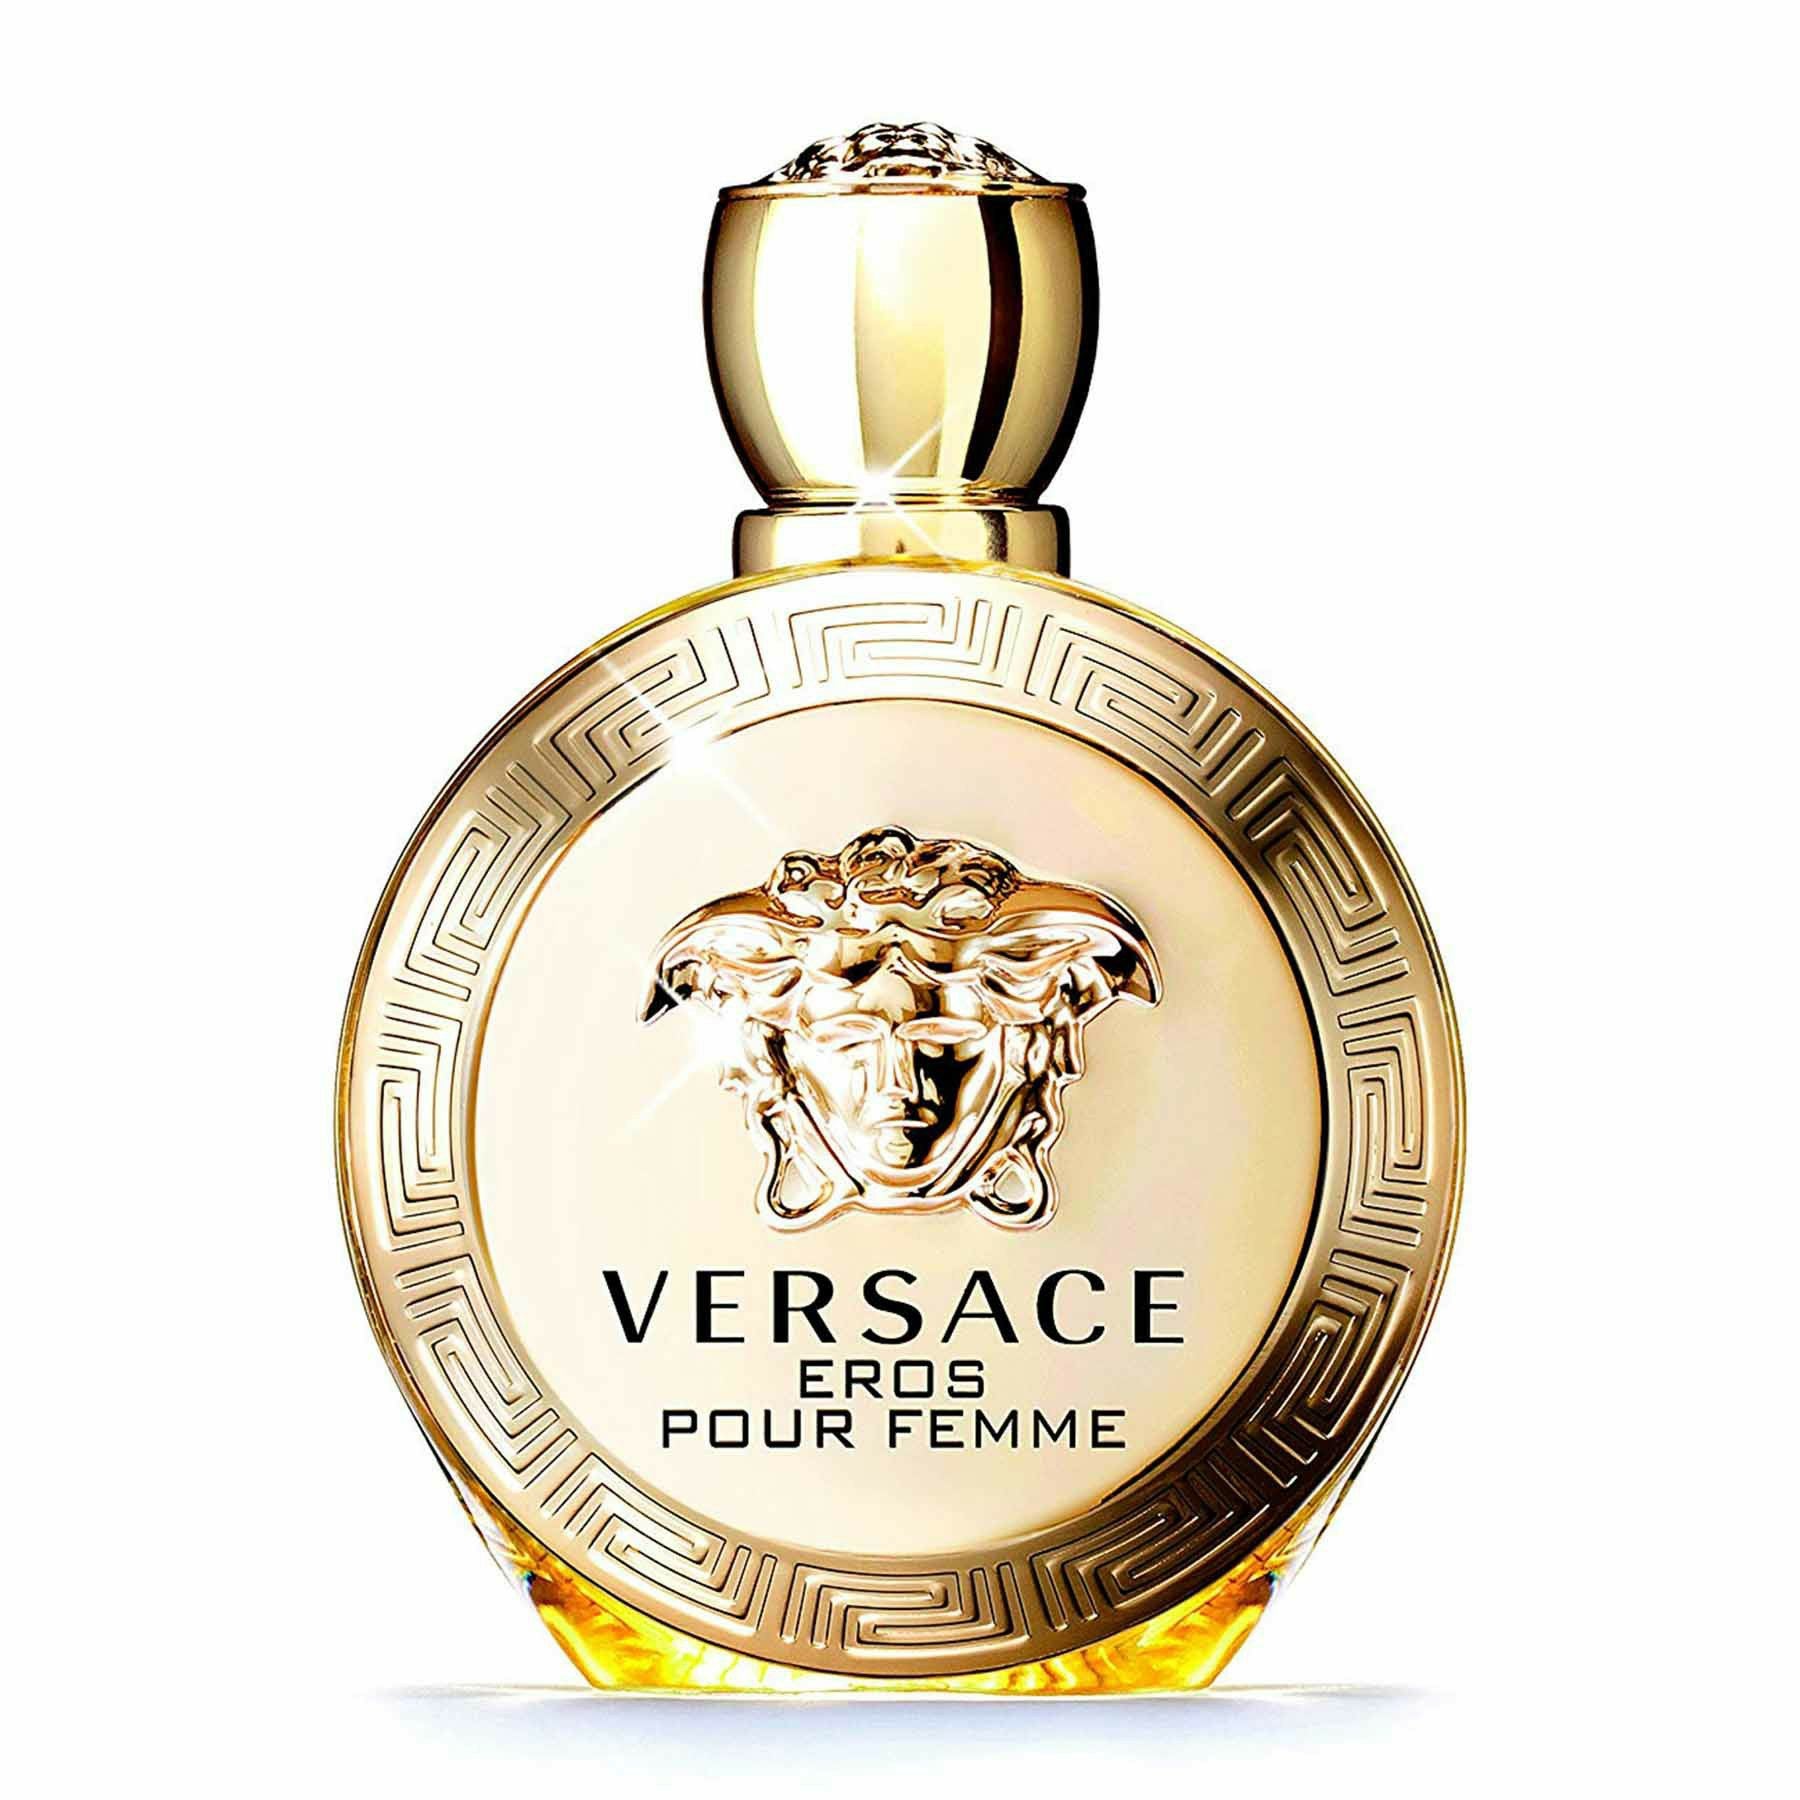 Versace Eros Pour Femme Eau de Perfume for Women - 50ML